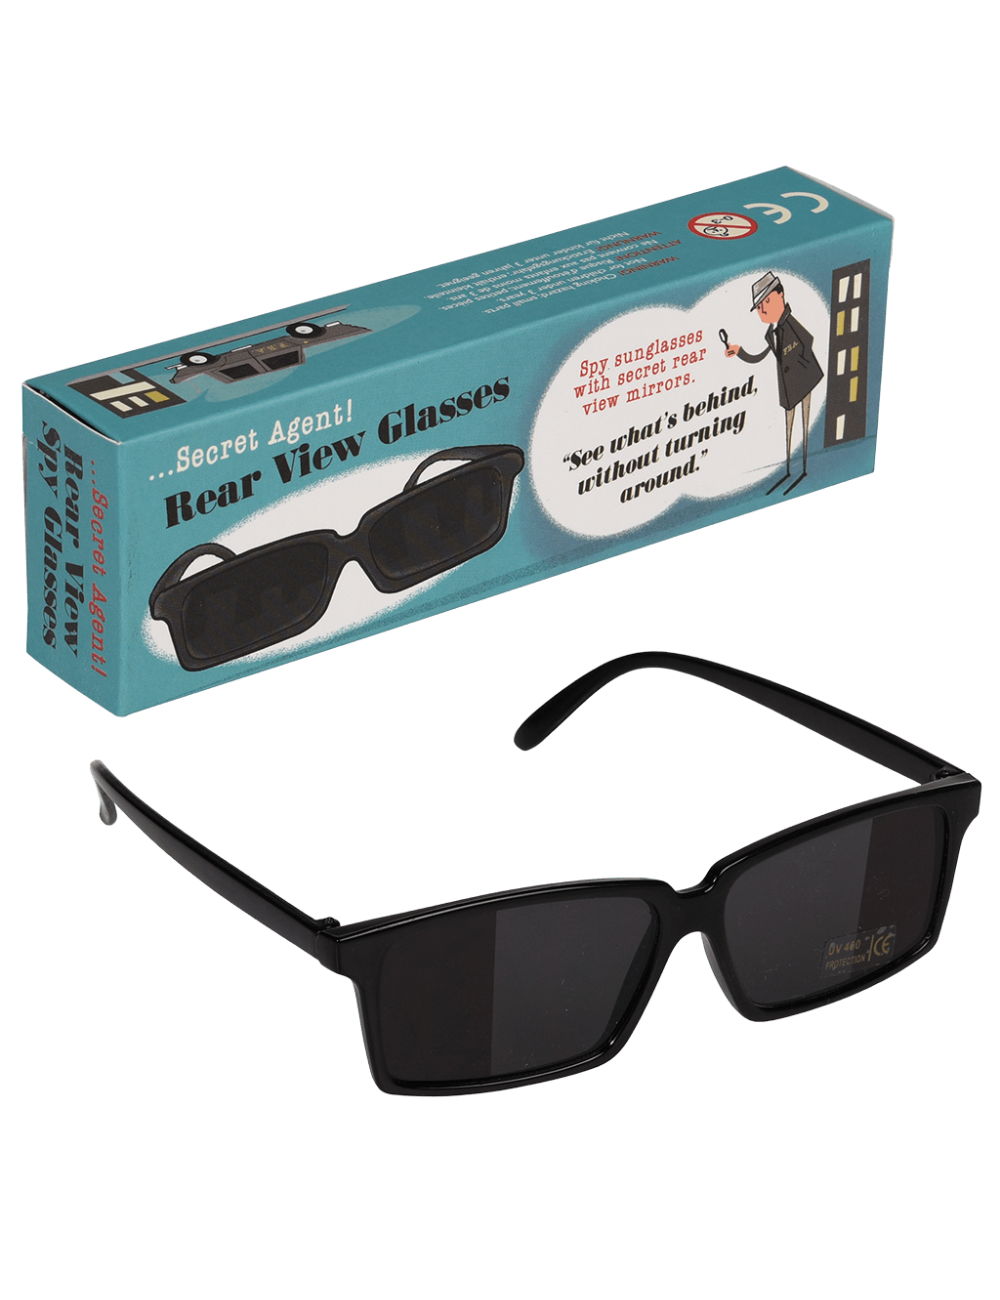 Secret Agent Rearview Glasses